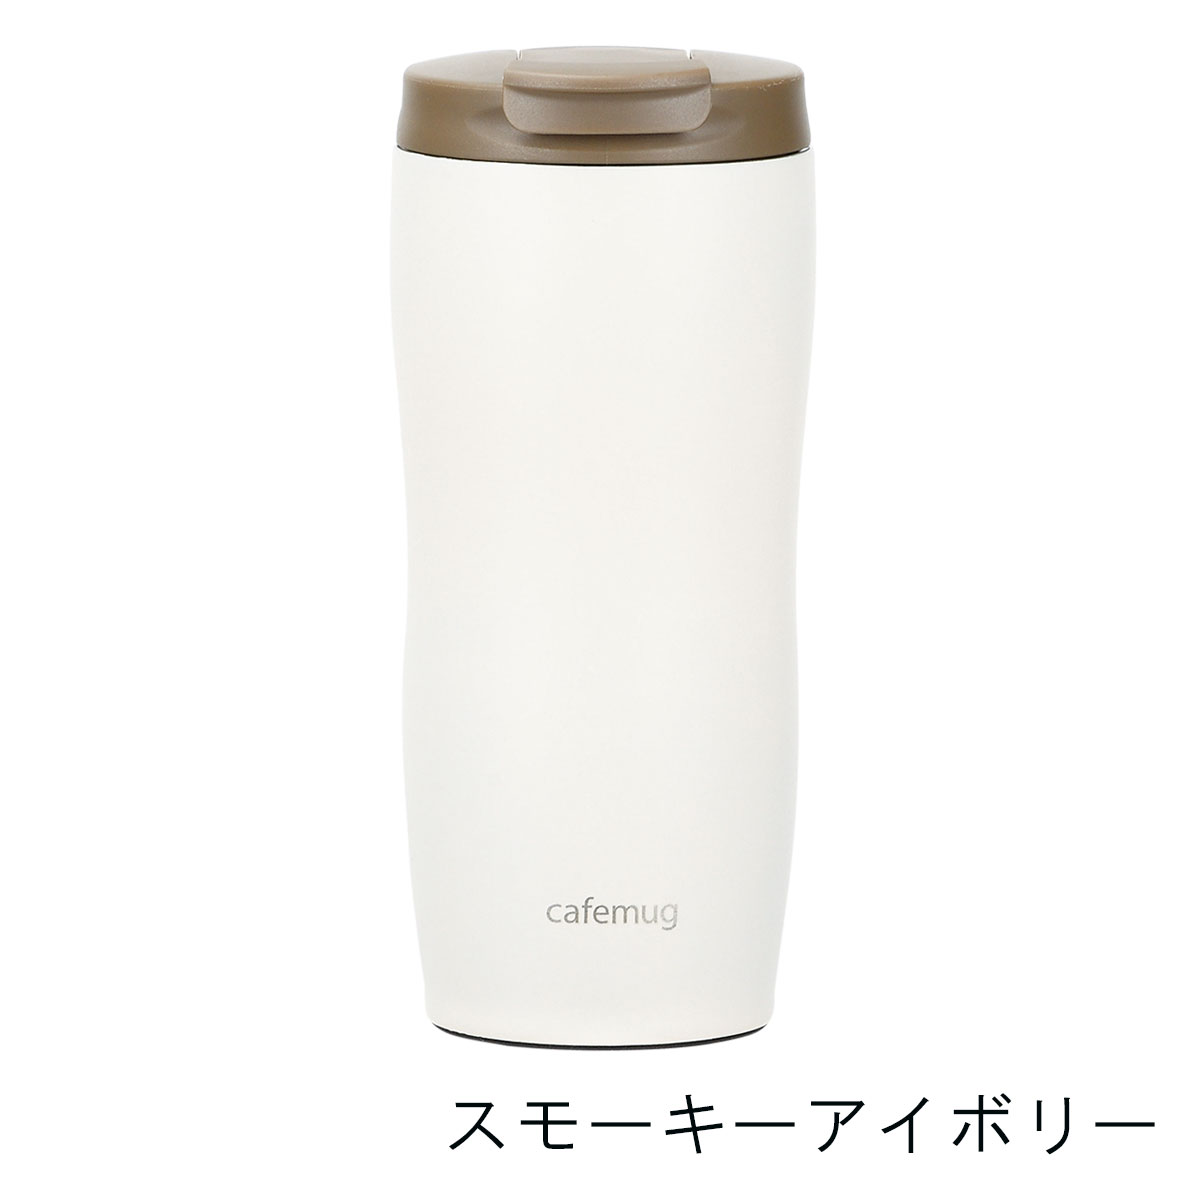 Bình giữ nhiệt inox Cafe Mug 360ml giữ nước nóng & lạnh hiệu quả - nội địa Nhật Bản